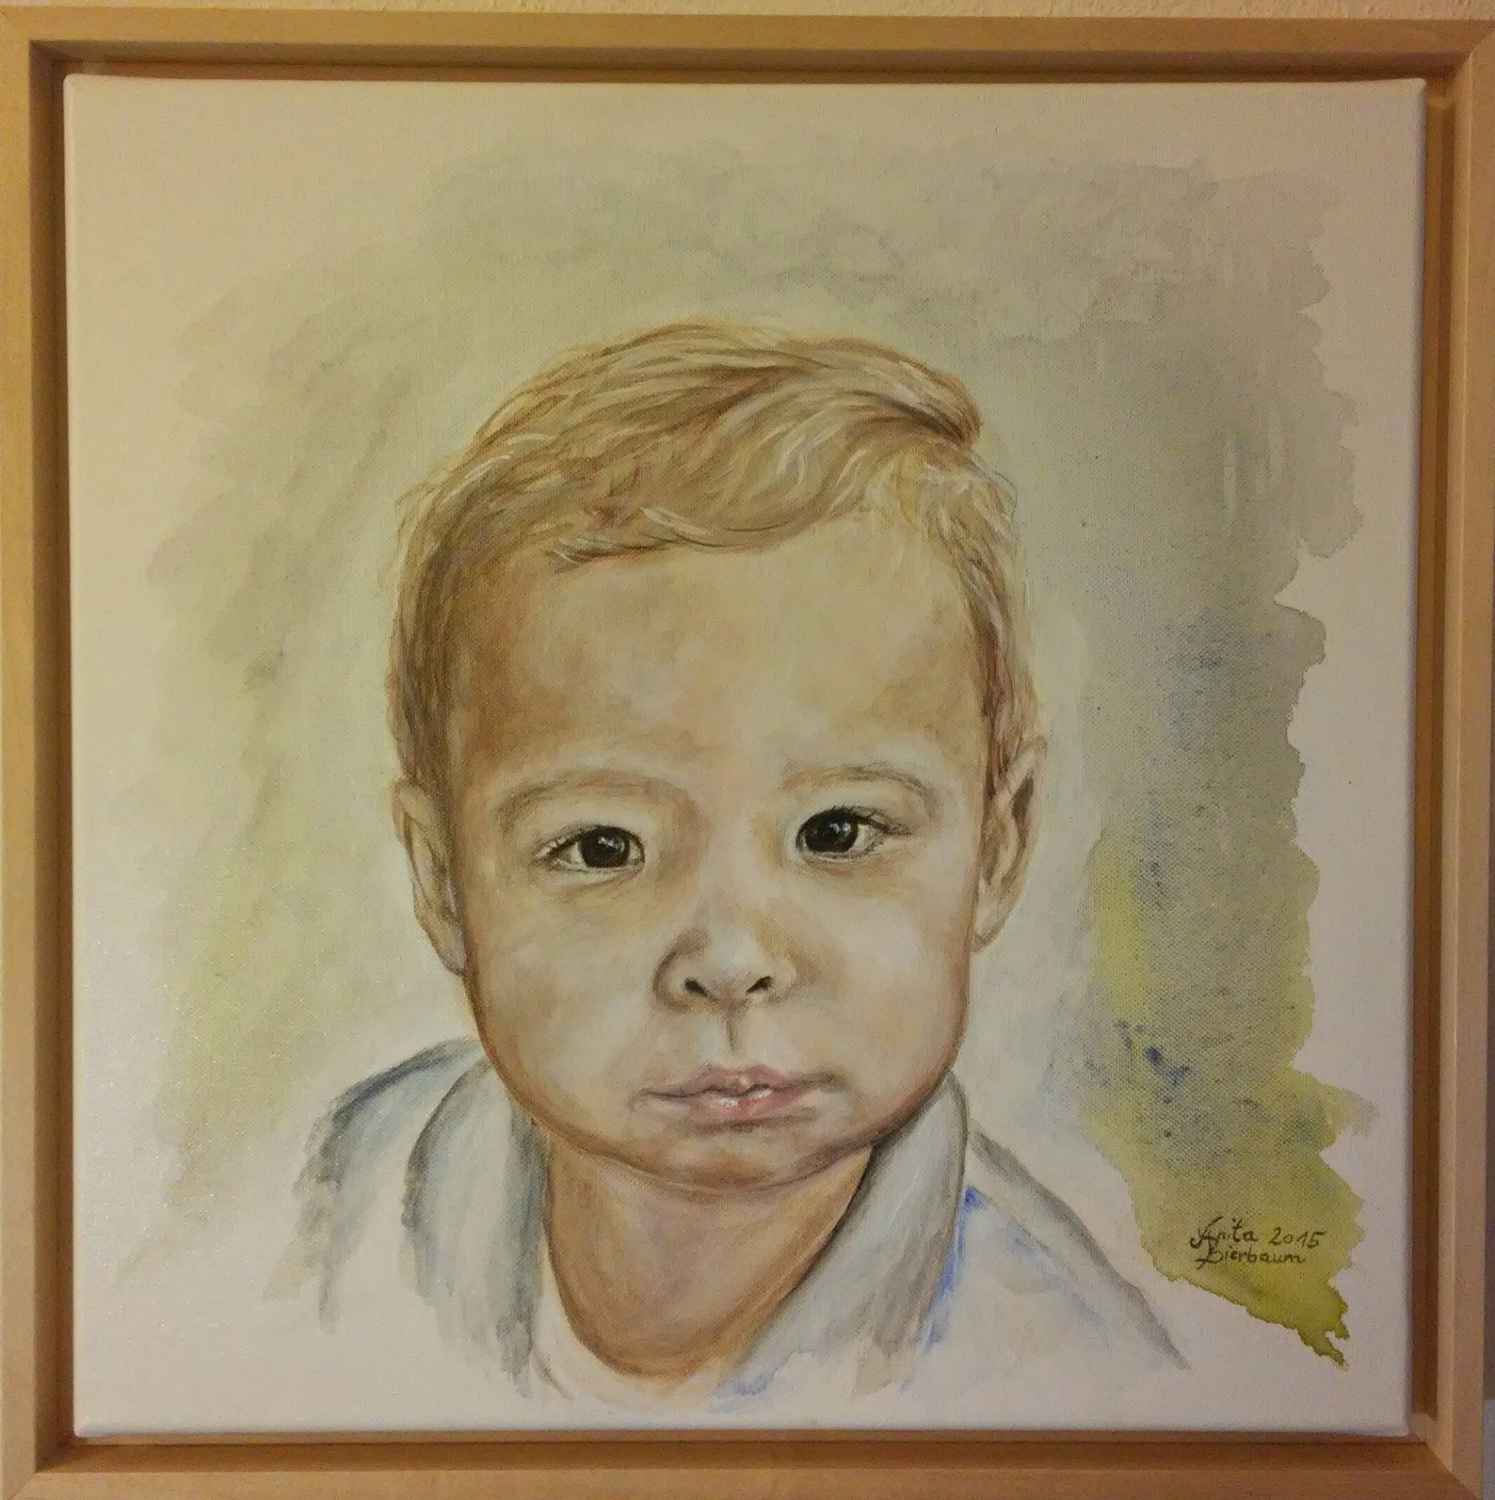 Watercolor Style Portrait auf Altholz 40x40cm 320,-